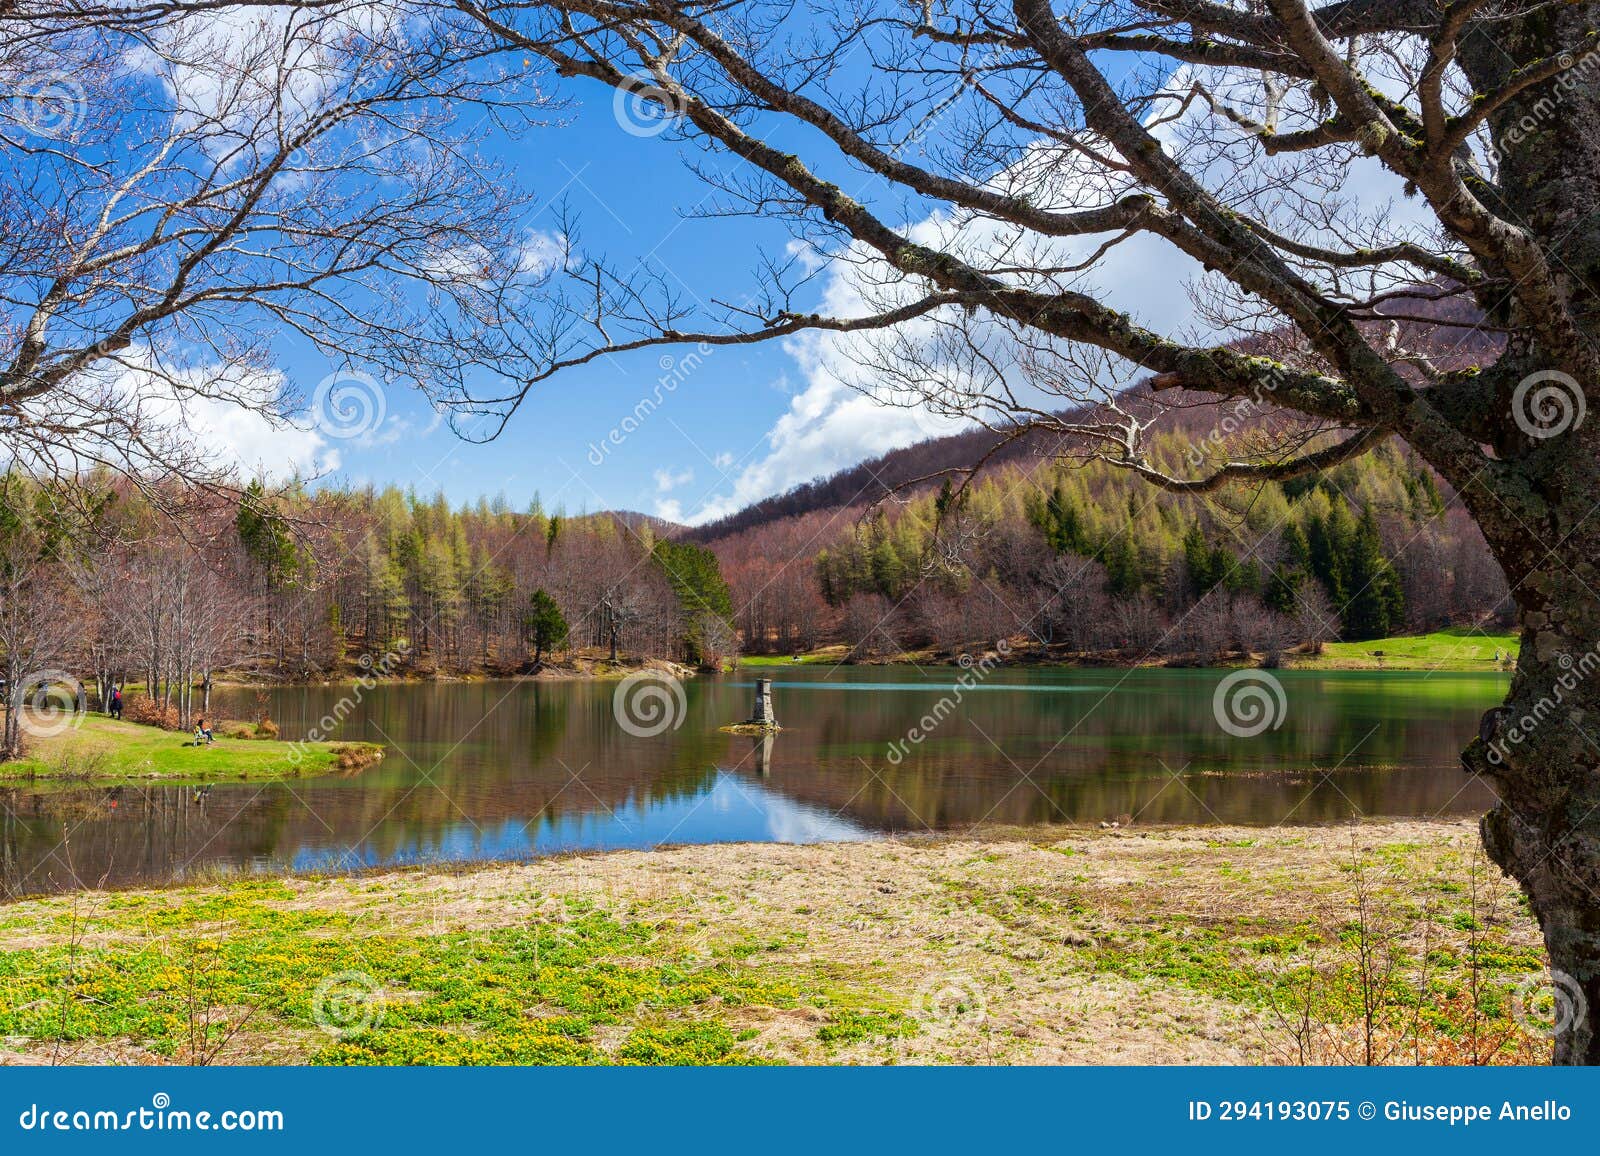 alamone lake. national park of appennino tosco-emilianoc